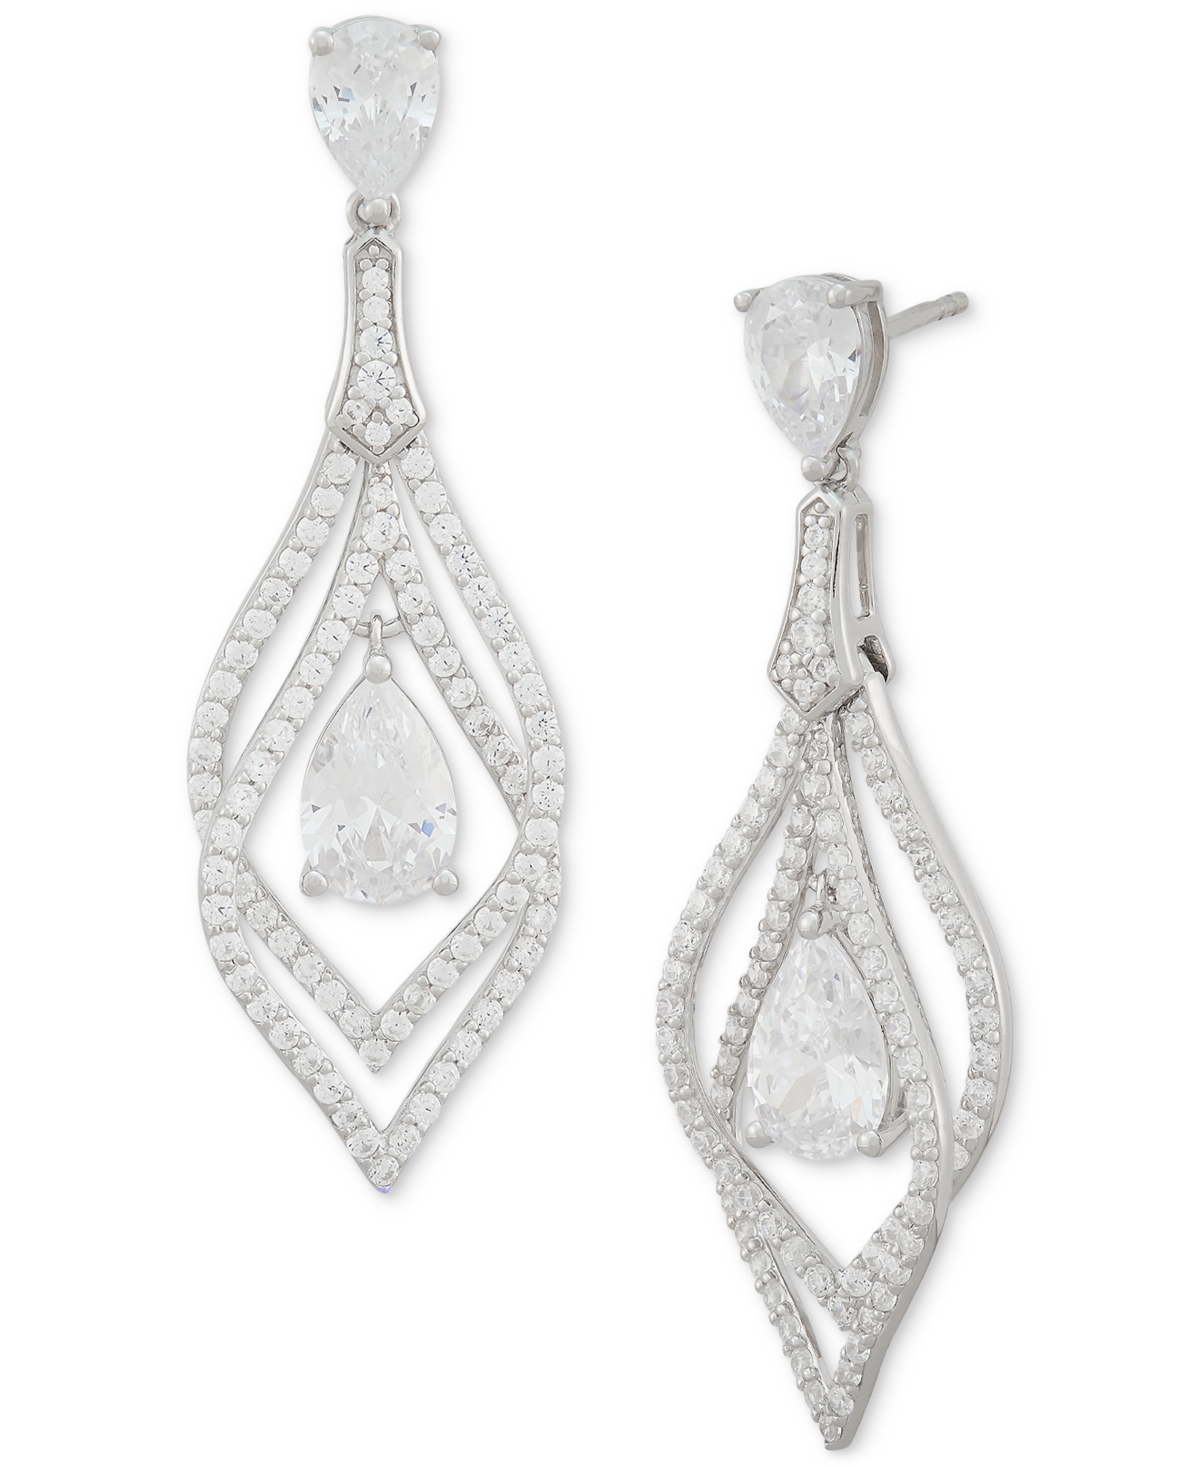 Cubic Zirconia Pear Orbital Drop Earrings in Sterling Silver - Sterling Silver